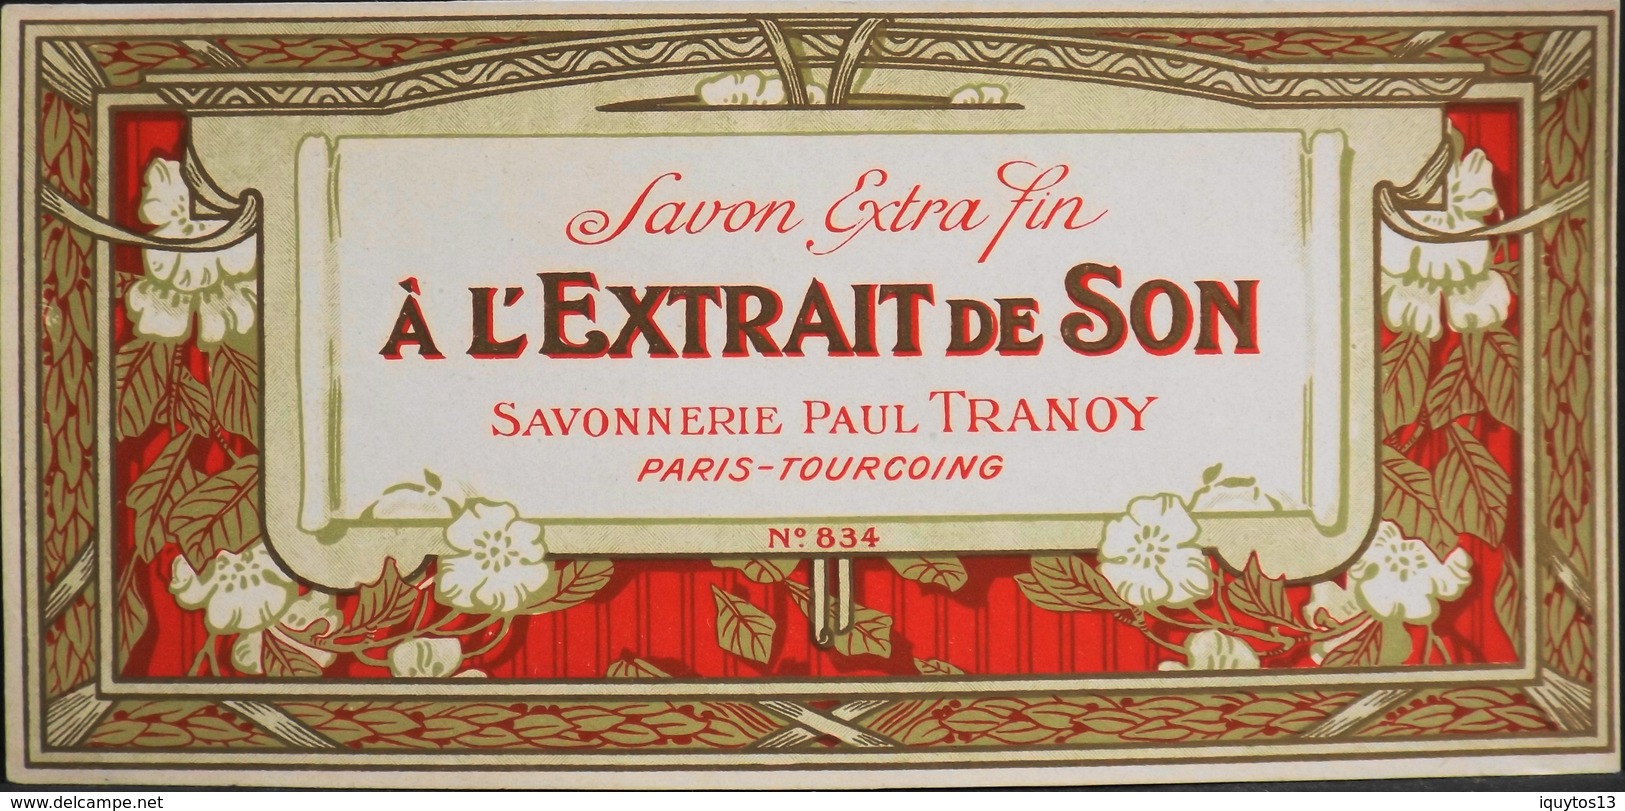 ETIQUETTE ANCIENNE - SAVON EXTRA-FIN  à L'Extrait De Son N° 834 - Paul TRANOY - Paris - En Très Bon Etat - Etichette